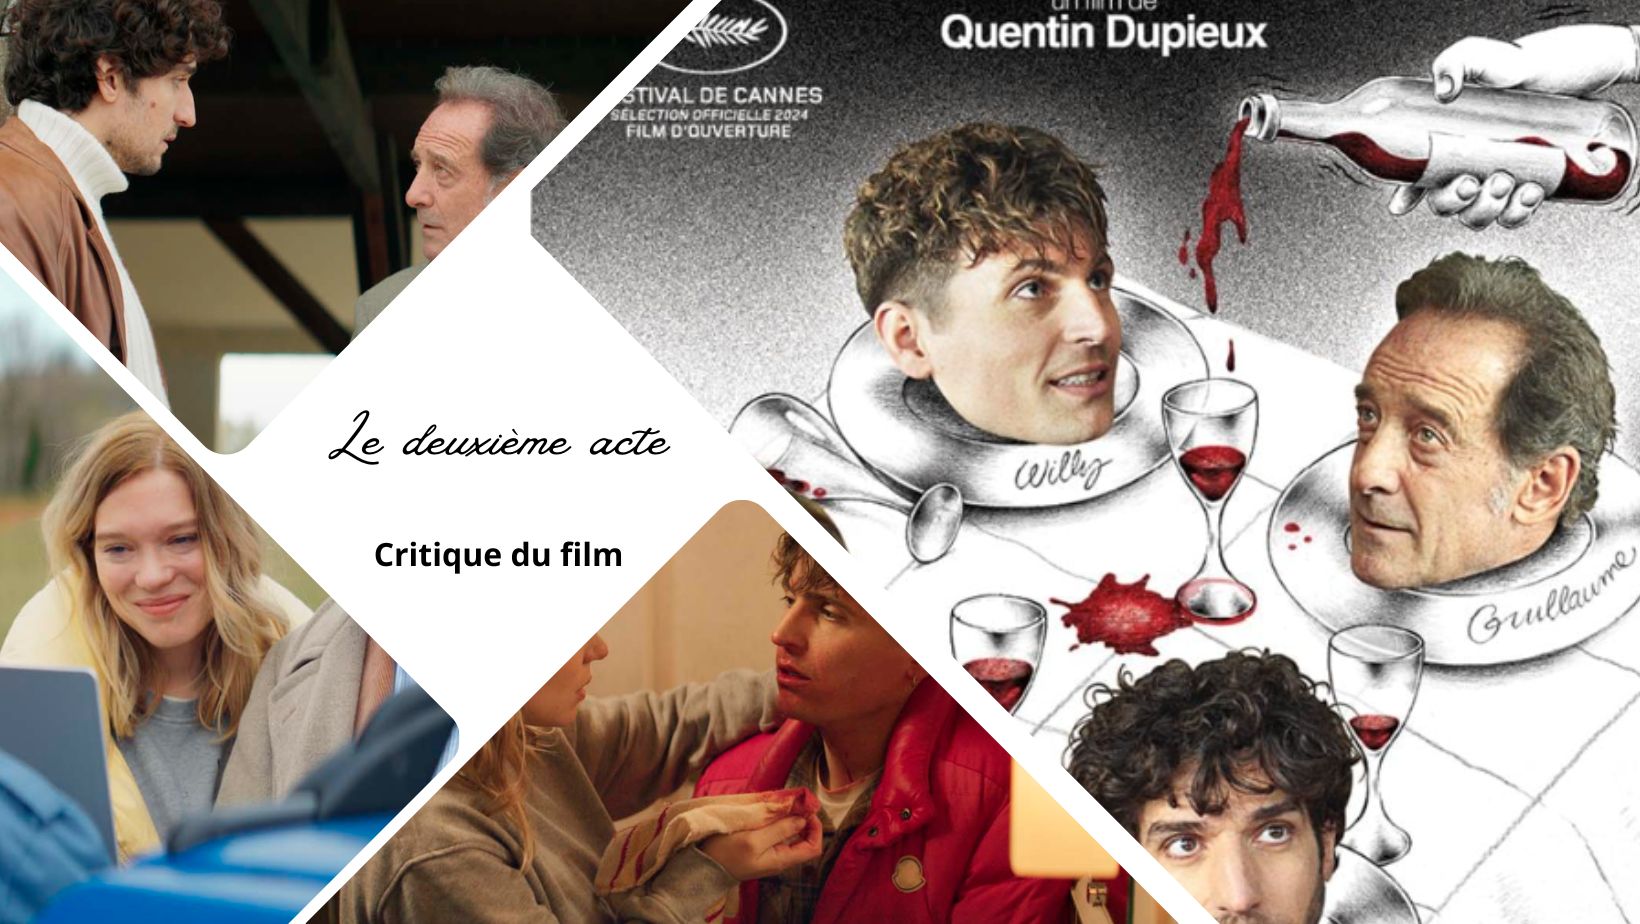 Le deuxième acte de Quentin Dupieux - Critique du film